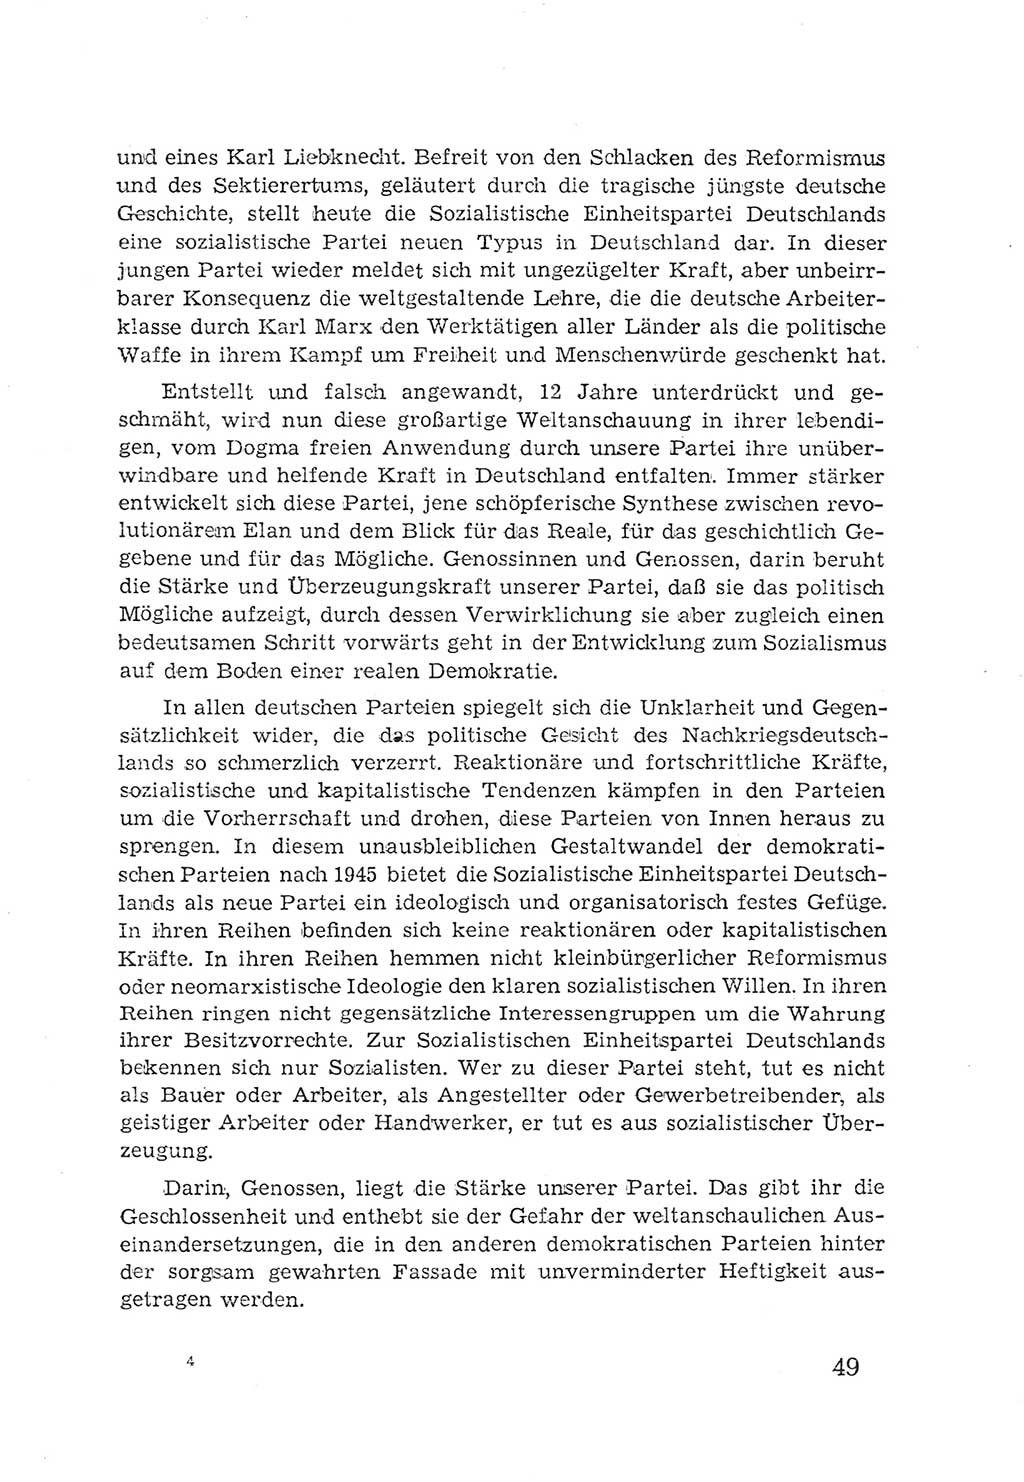 Protokoll der Verhandlungen des 2. Parteitages der Sozialistischen Einheitspartei Deutschlands (SED) [Sowjetische Besatzungszone (SBZ) Deutschlands] 1947, Seite 49 (Prot. Verh. 2. PT SED SBZ Dtl. 1947, S. 49)